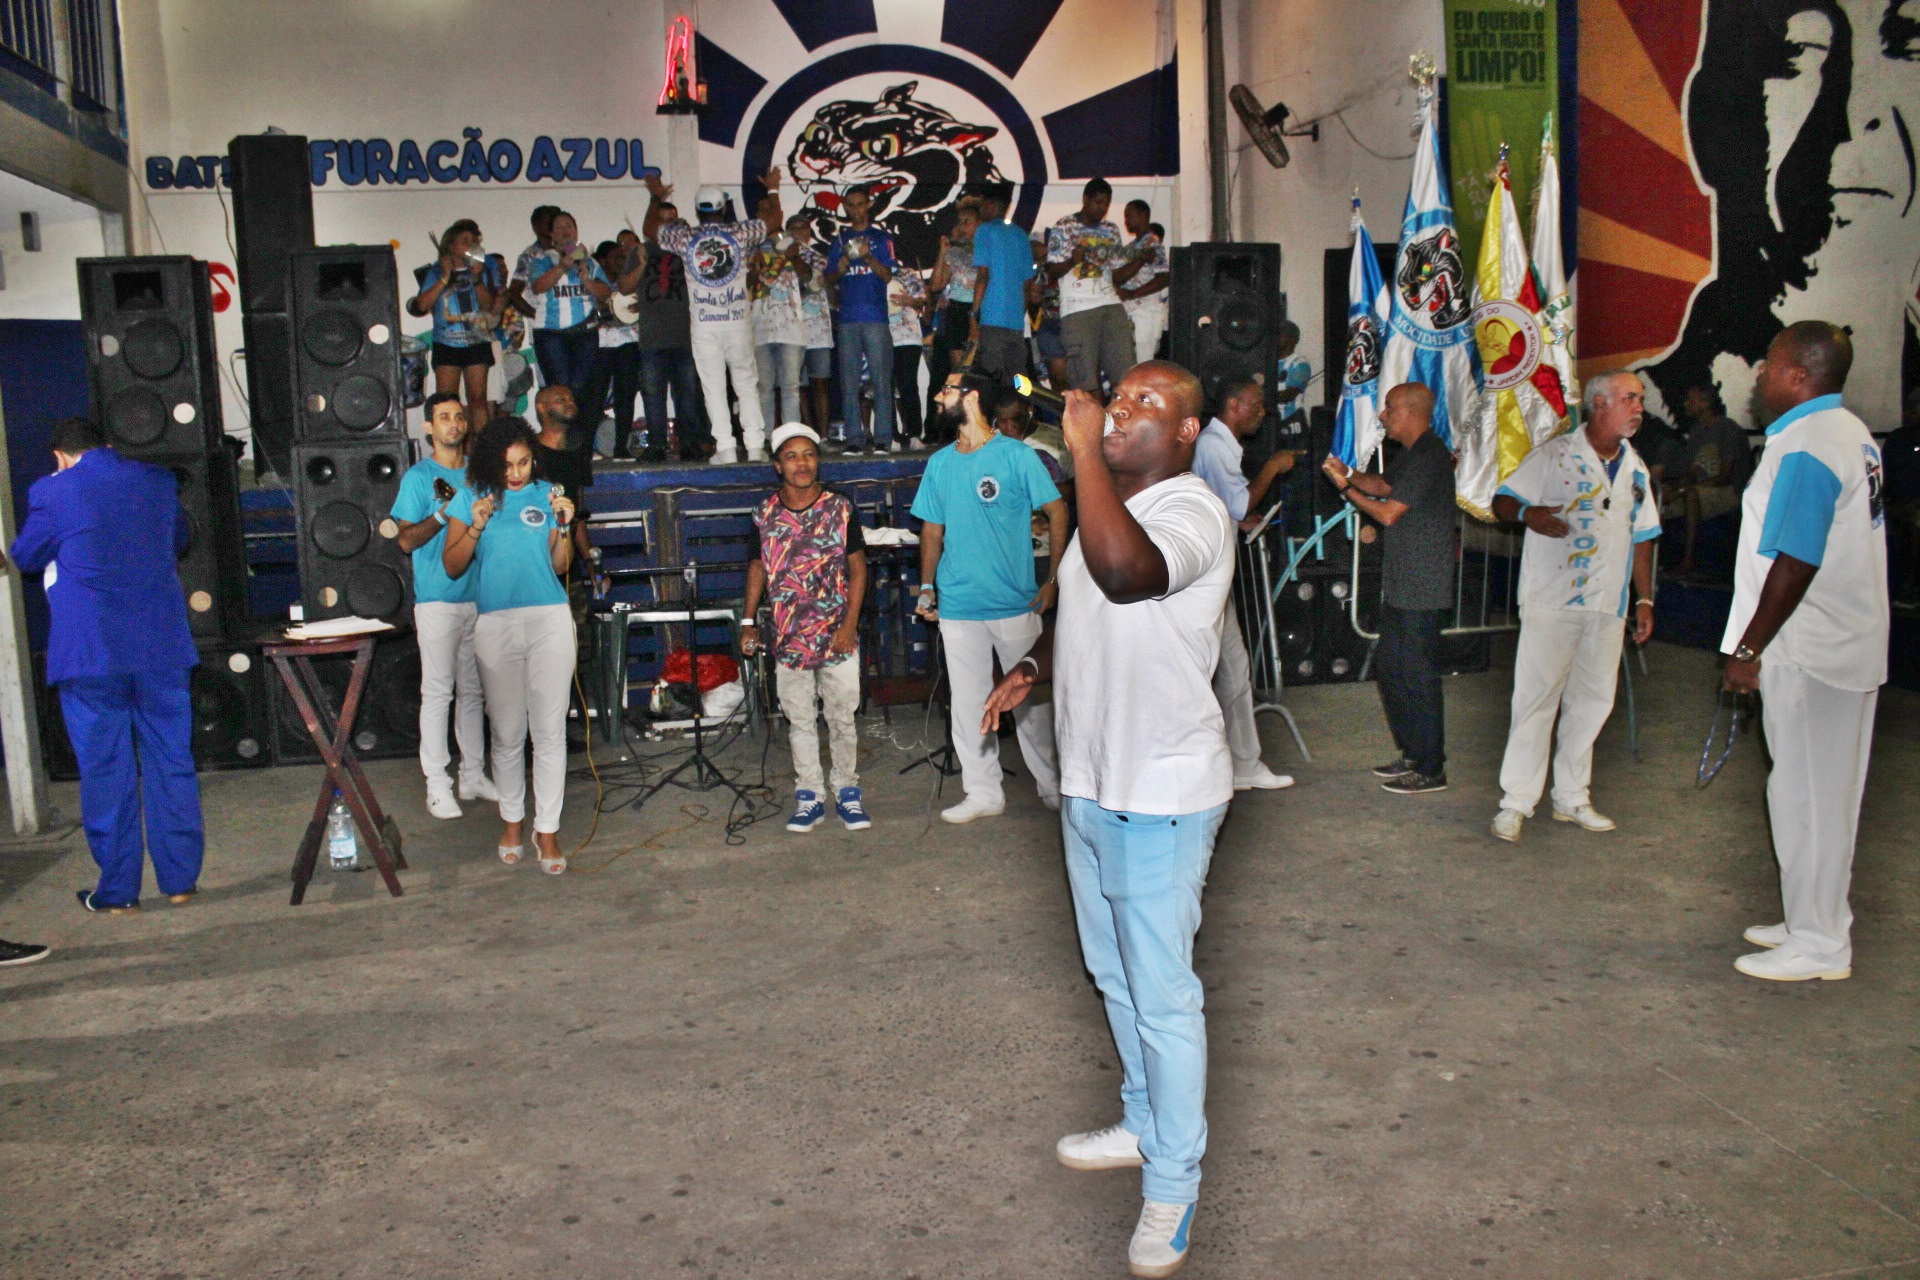 Evento na Mocidade Unida do Santa Marta. Foto: Helder Martins